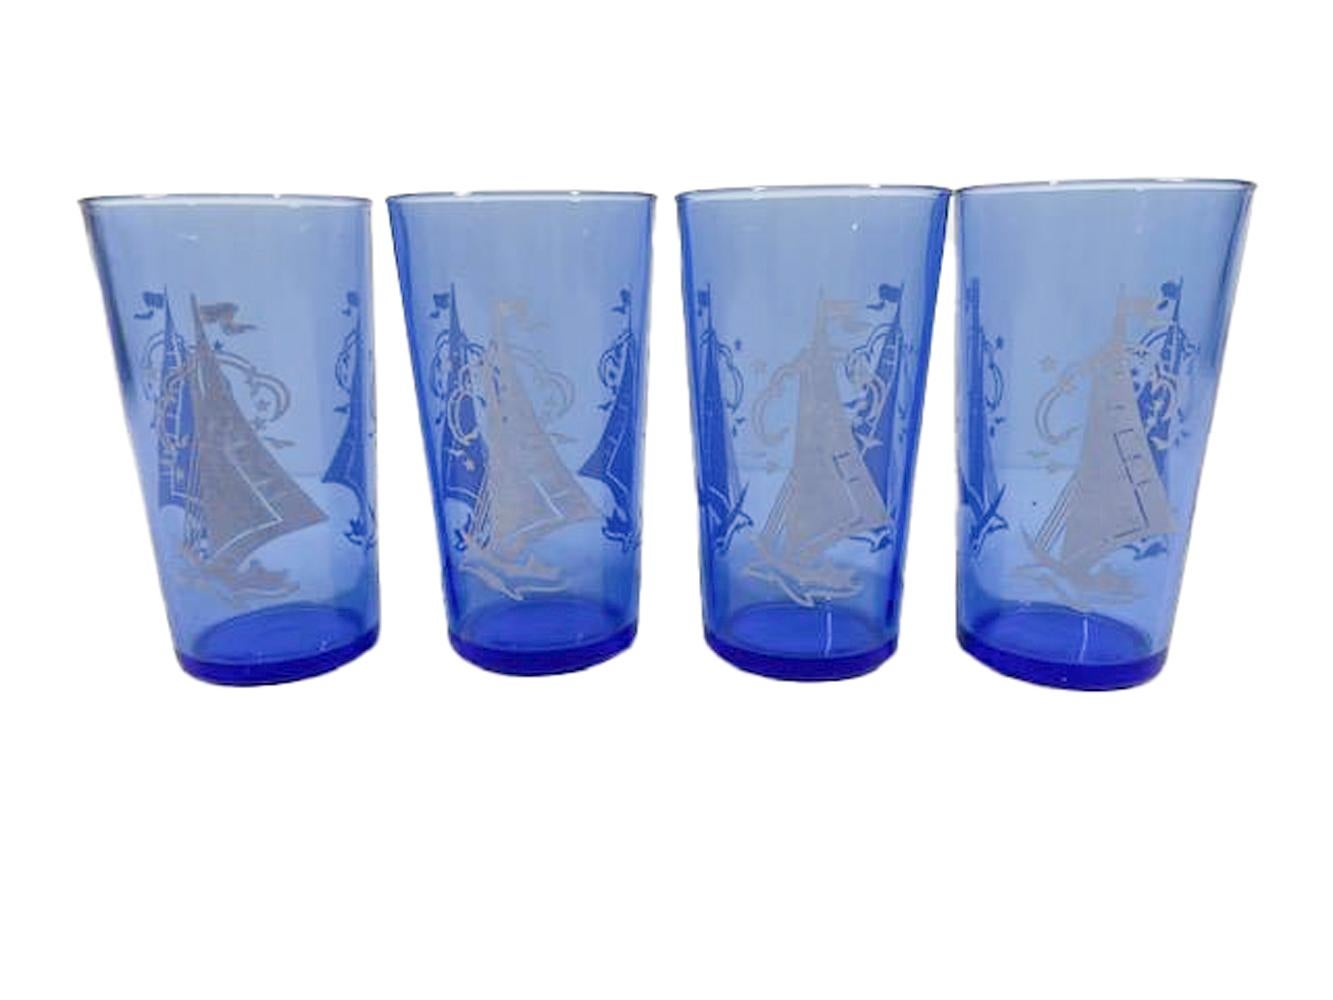 Shakers et 10 verres en verre bleu cobalt avec des scènes de navigation blanches, datant du début du 20e siècle, de la marque Hazel=Atlas. L'ensemble se compose d'un shaker à cocktail avec couvercle chromé bombé, de quatre verres à cocktail et de